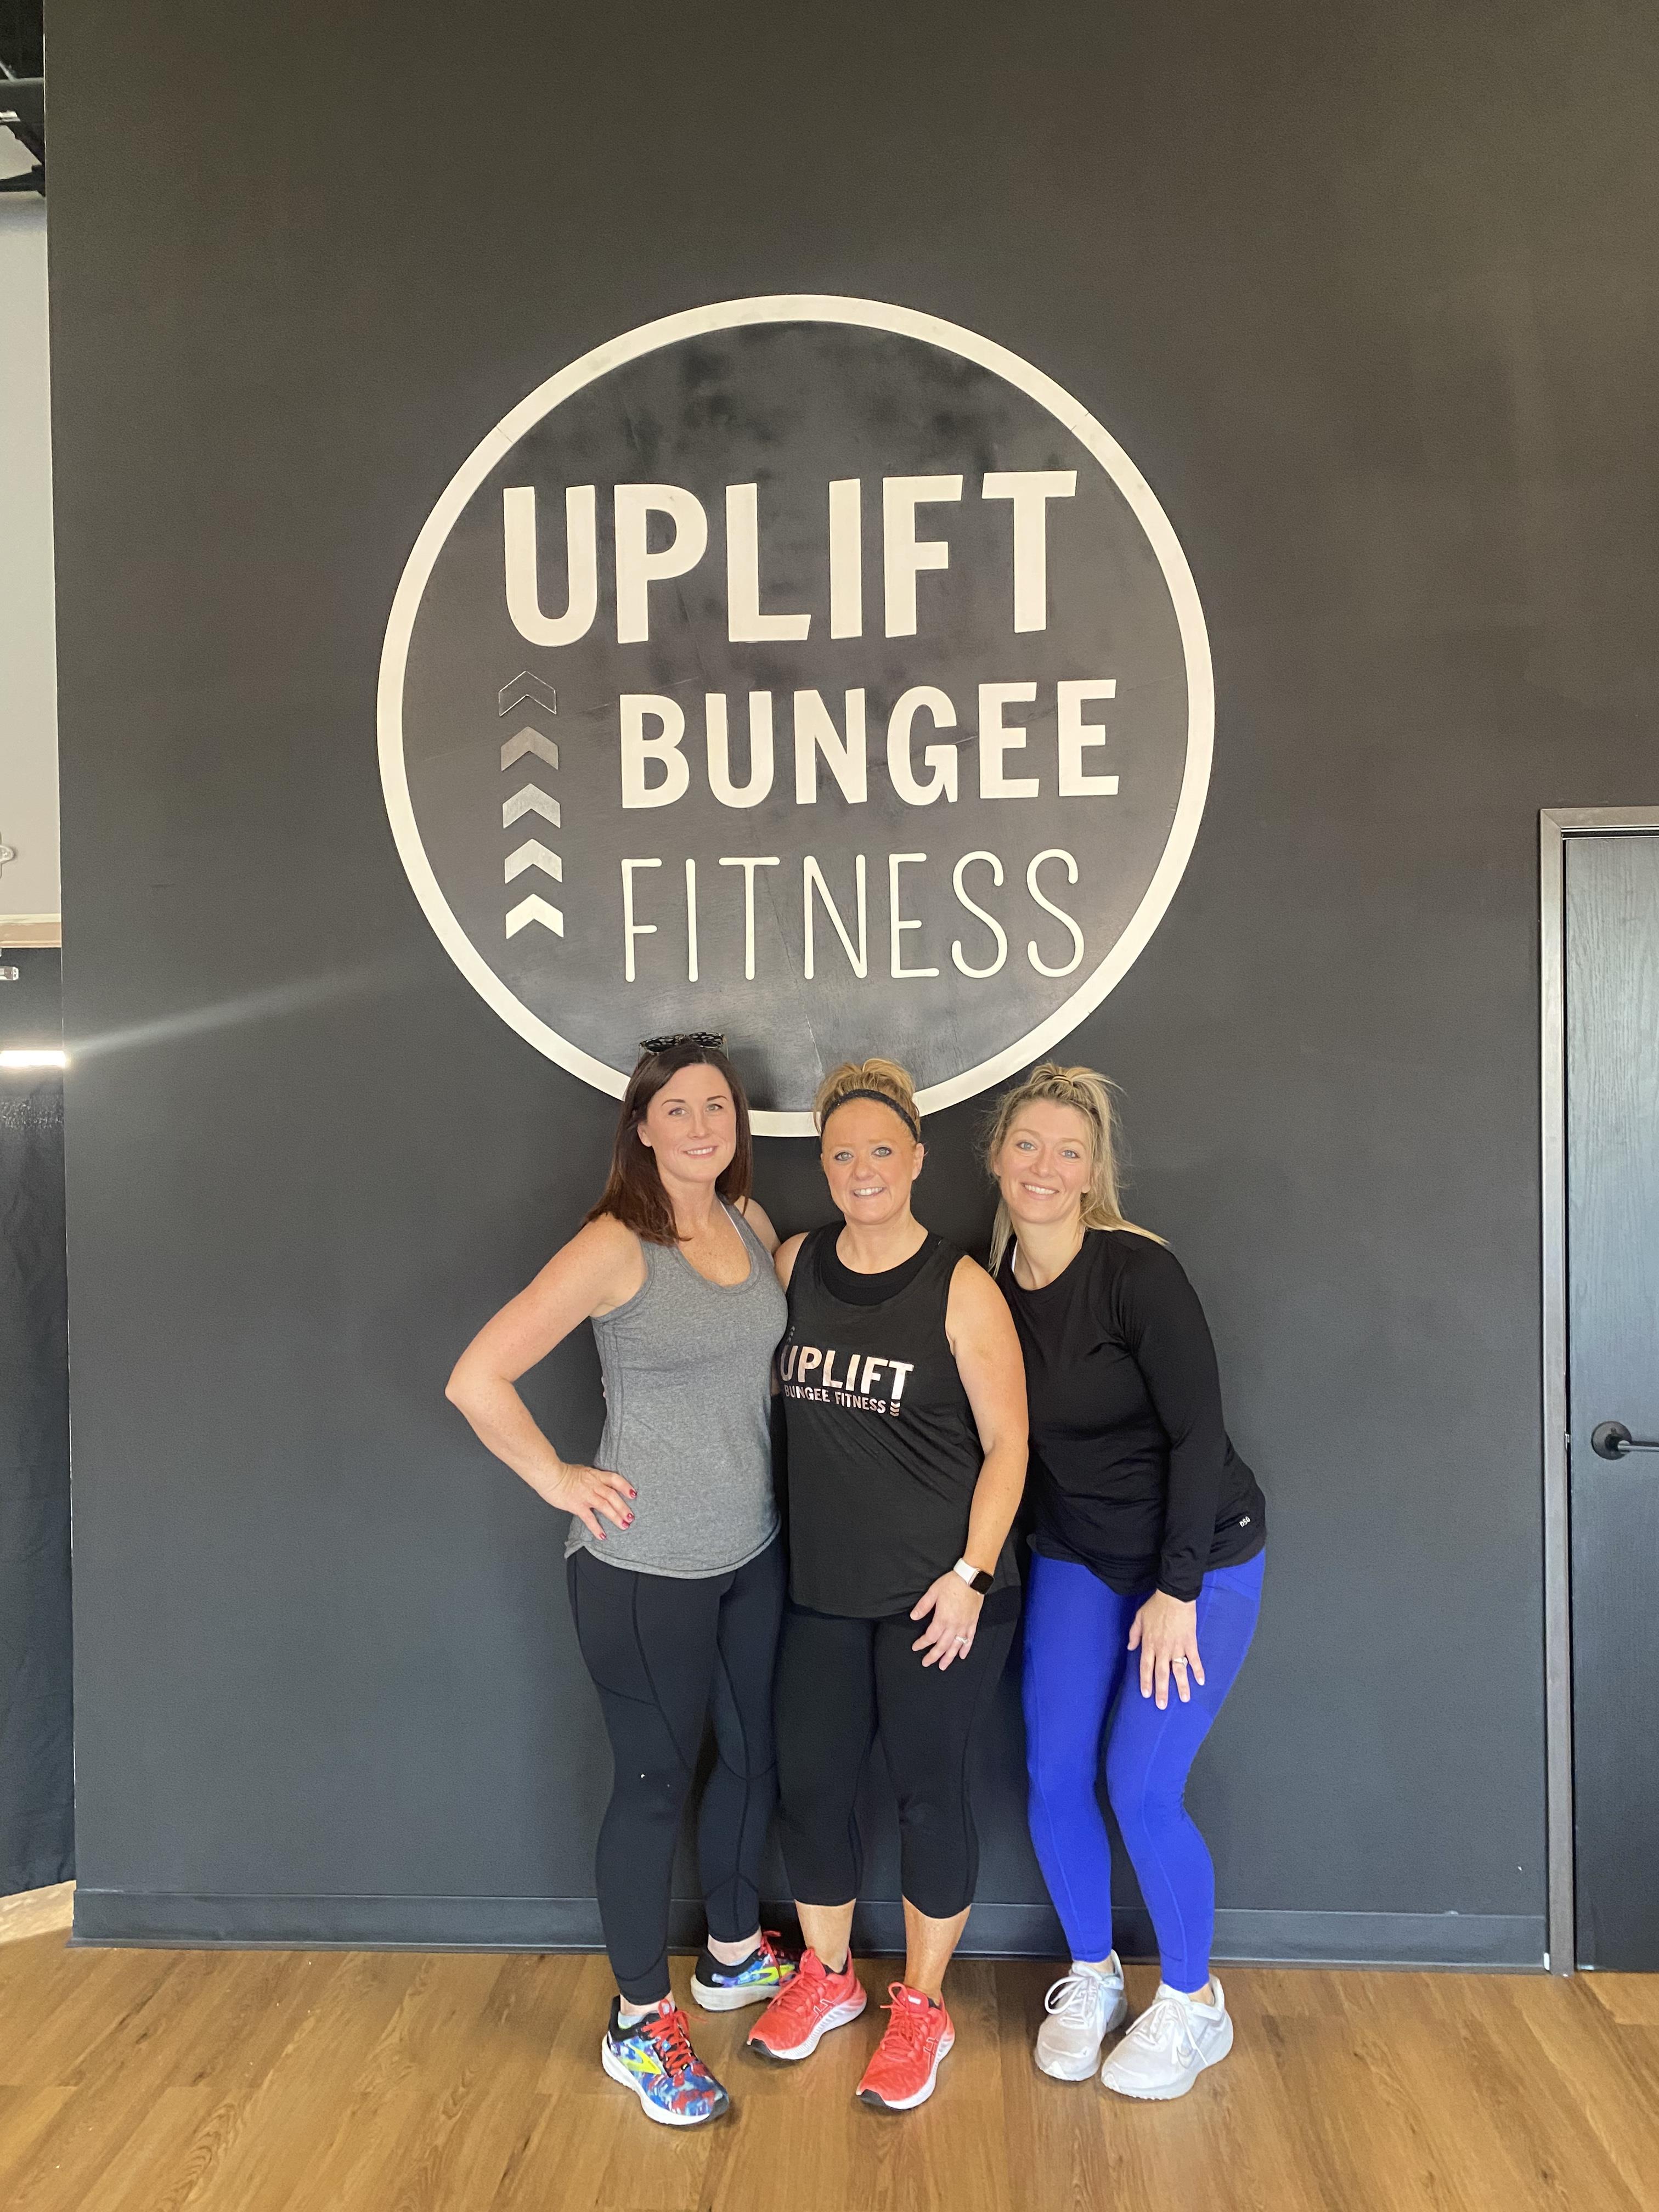 Uplift Bungee Fitness - Uplift Bungee Fitness